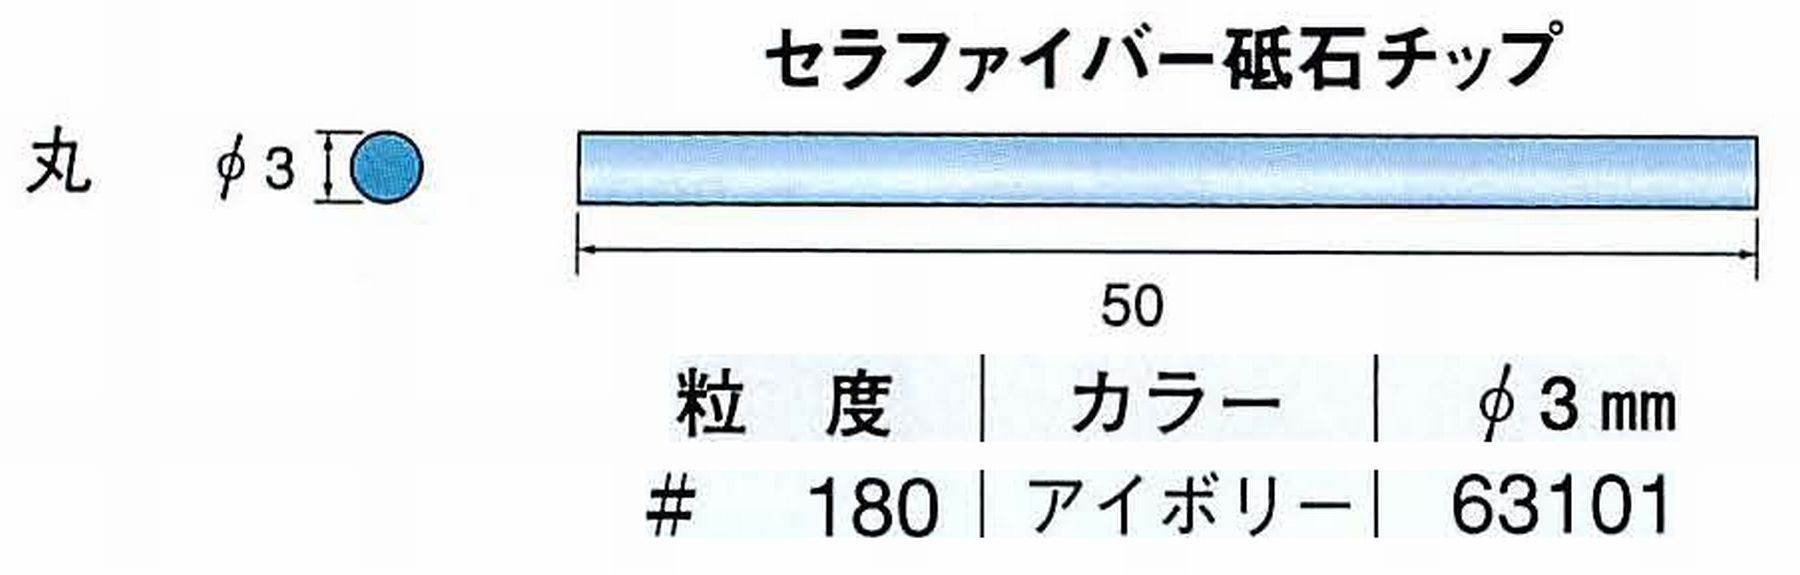 ナカニシ/NAKANISHI 超音波研磨装置 シーナスneo/シーナス専用工具 セラファイバー砥石チップ 丸 63101